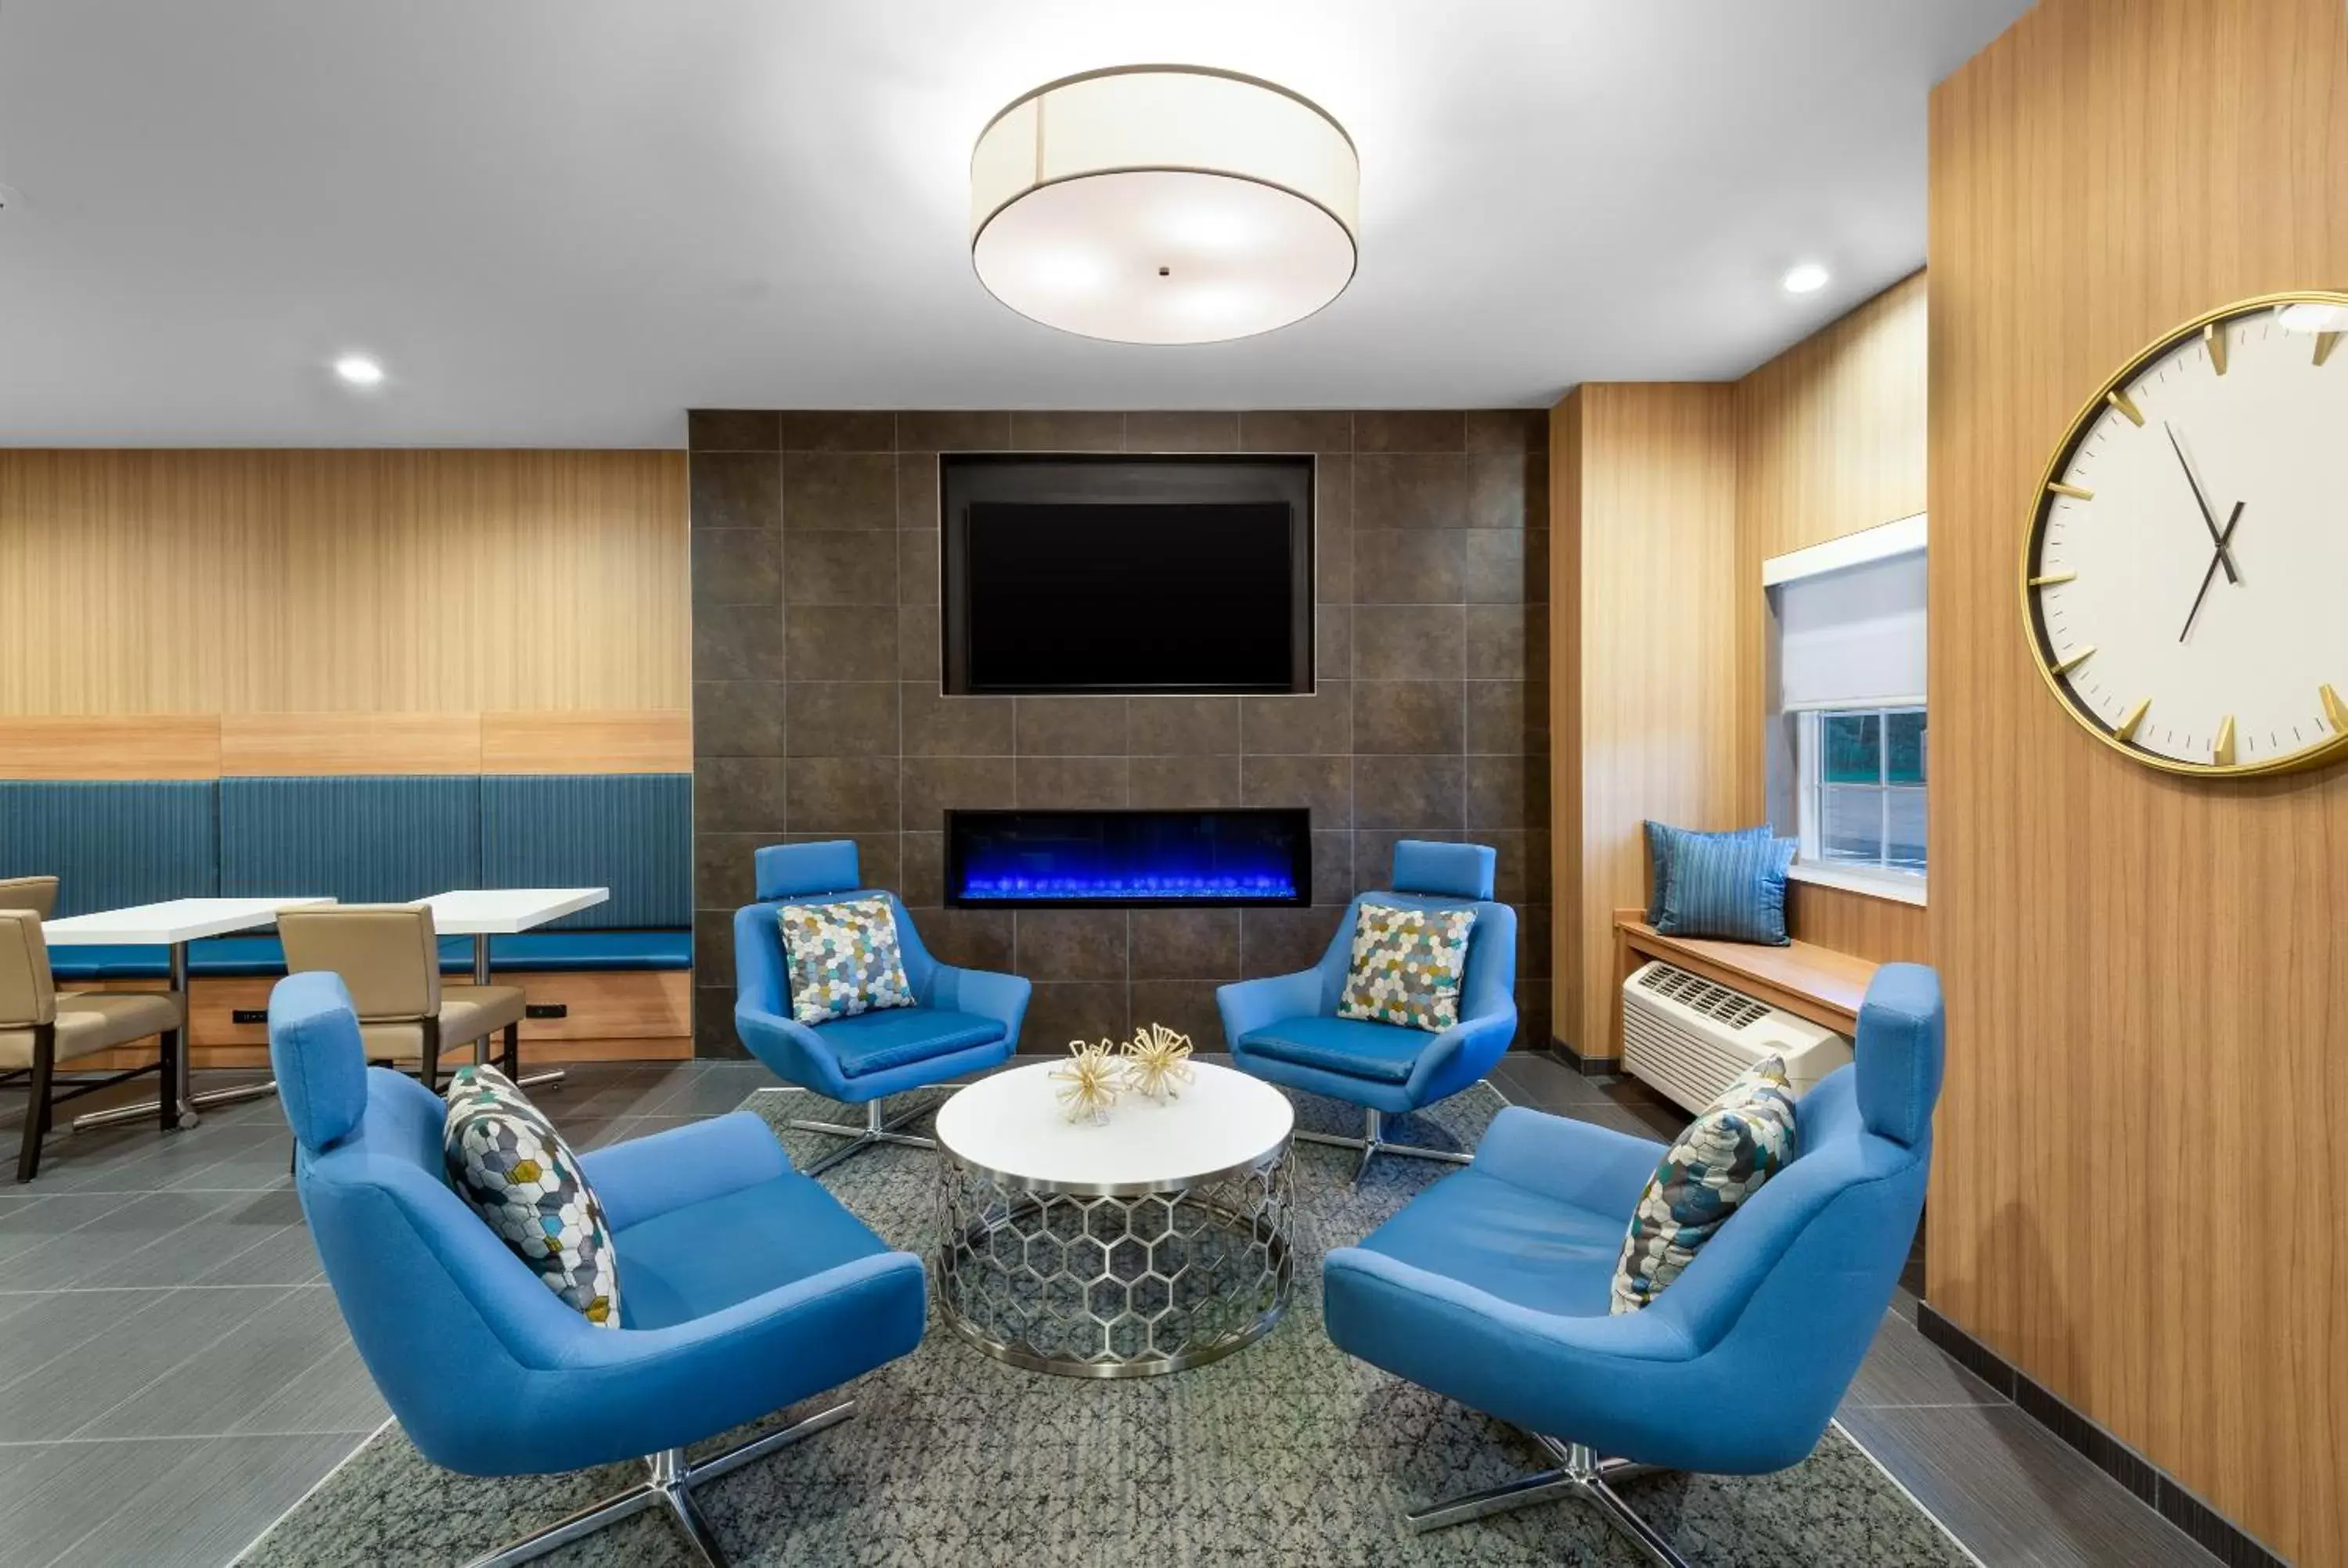 Lobby or reception in Microtel Inn & Suites by Wyndham Farmington